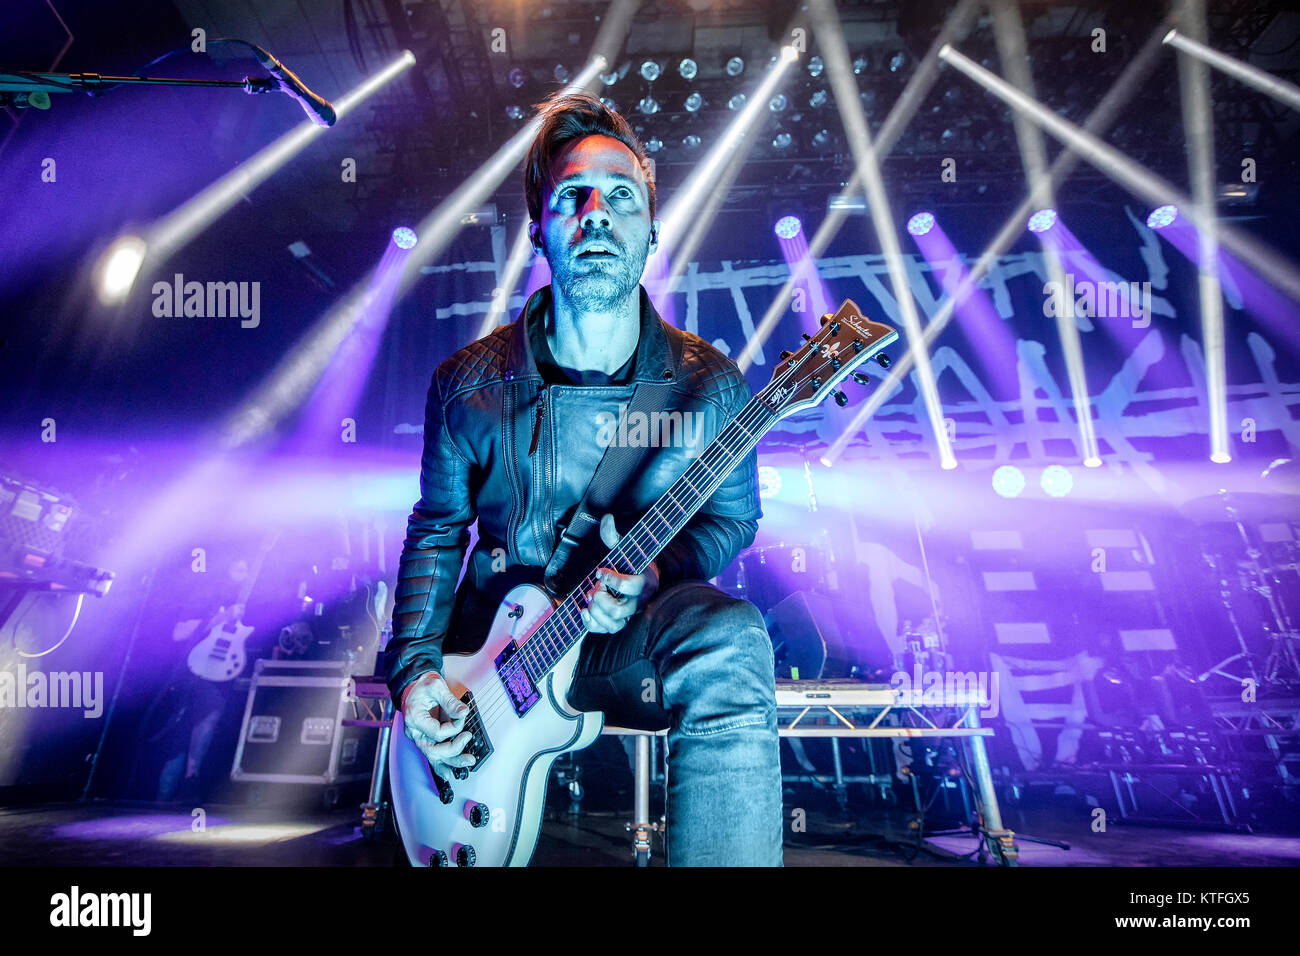 Norvège, Oslo - 23 octobre, 2017. Le groupe de metal américain de rock Papa Roach effectue un concert live de la Rockefeller à Oslo. Ici le guitariste Jerry Horton est vu sur scène. (Photo crédit : Gonzales Photo - Terje Dokken). Banque D'Images